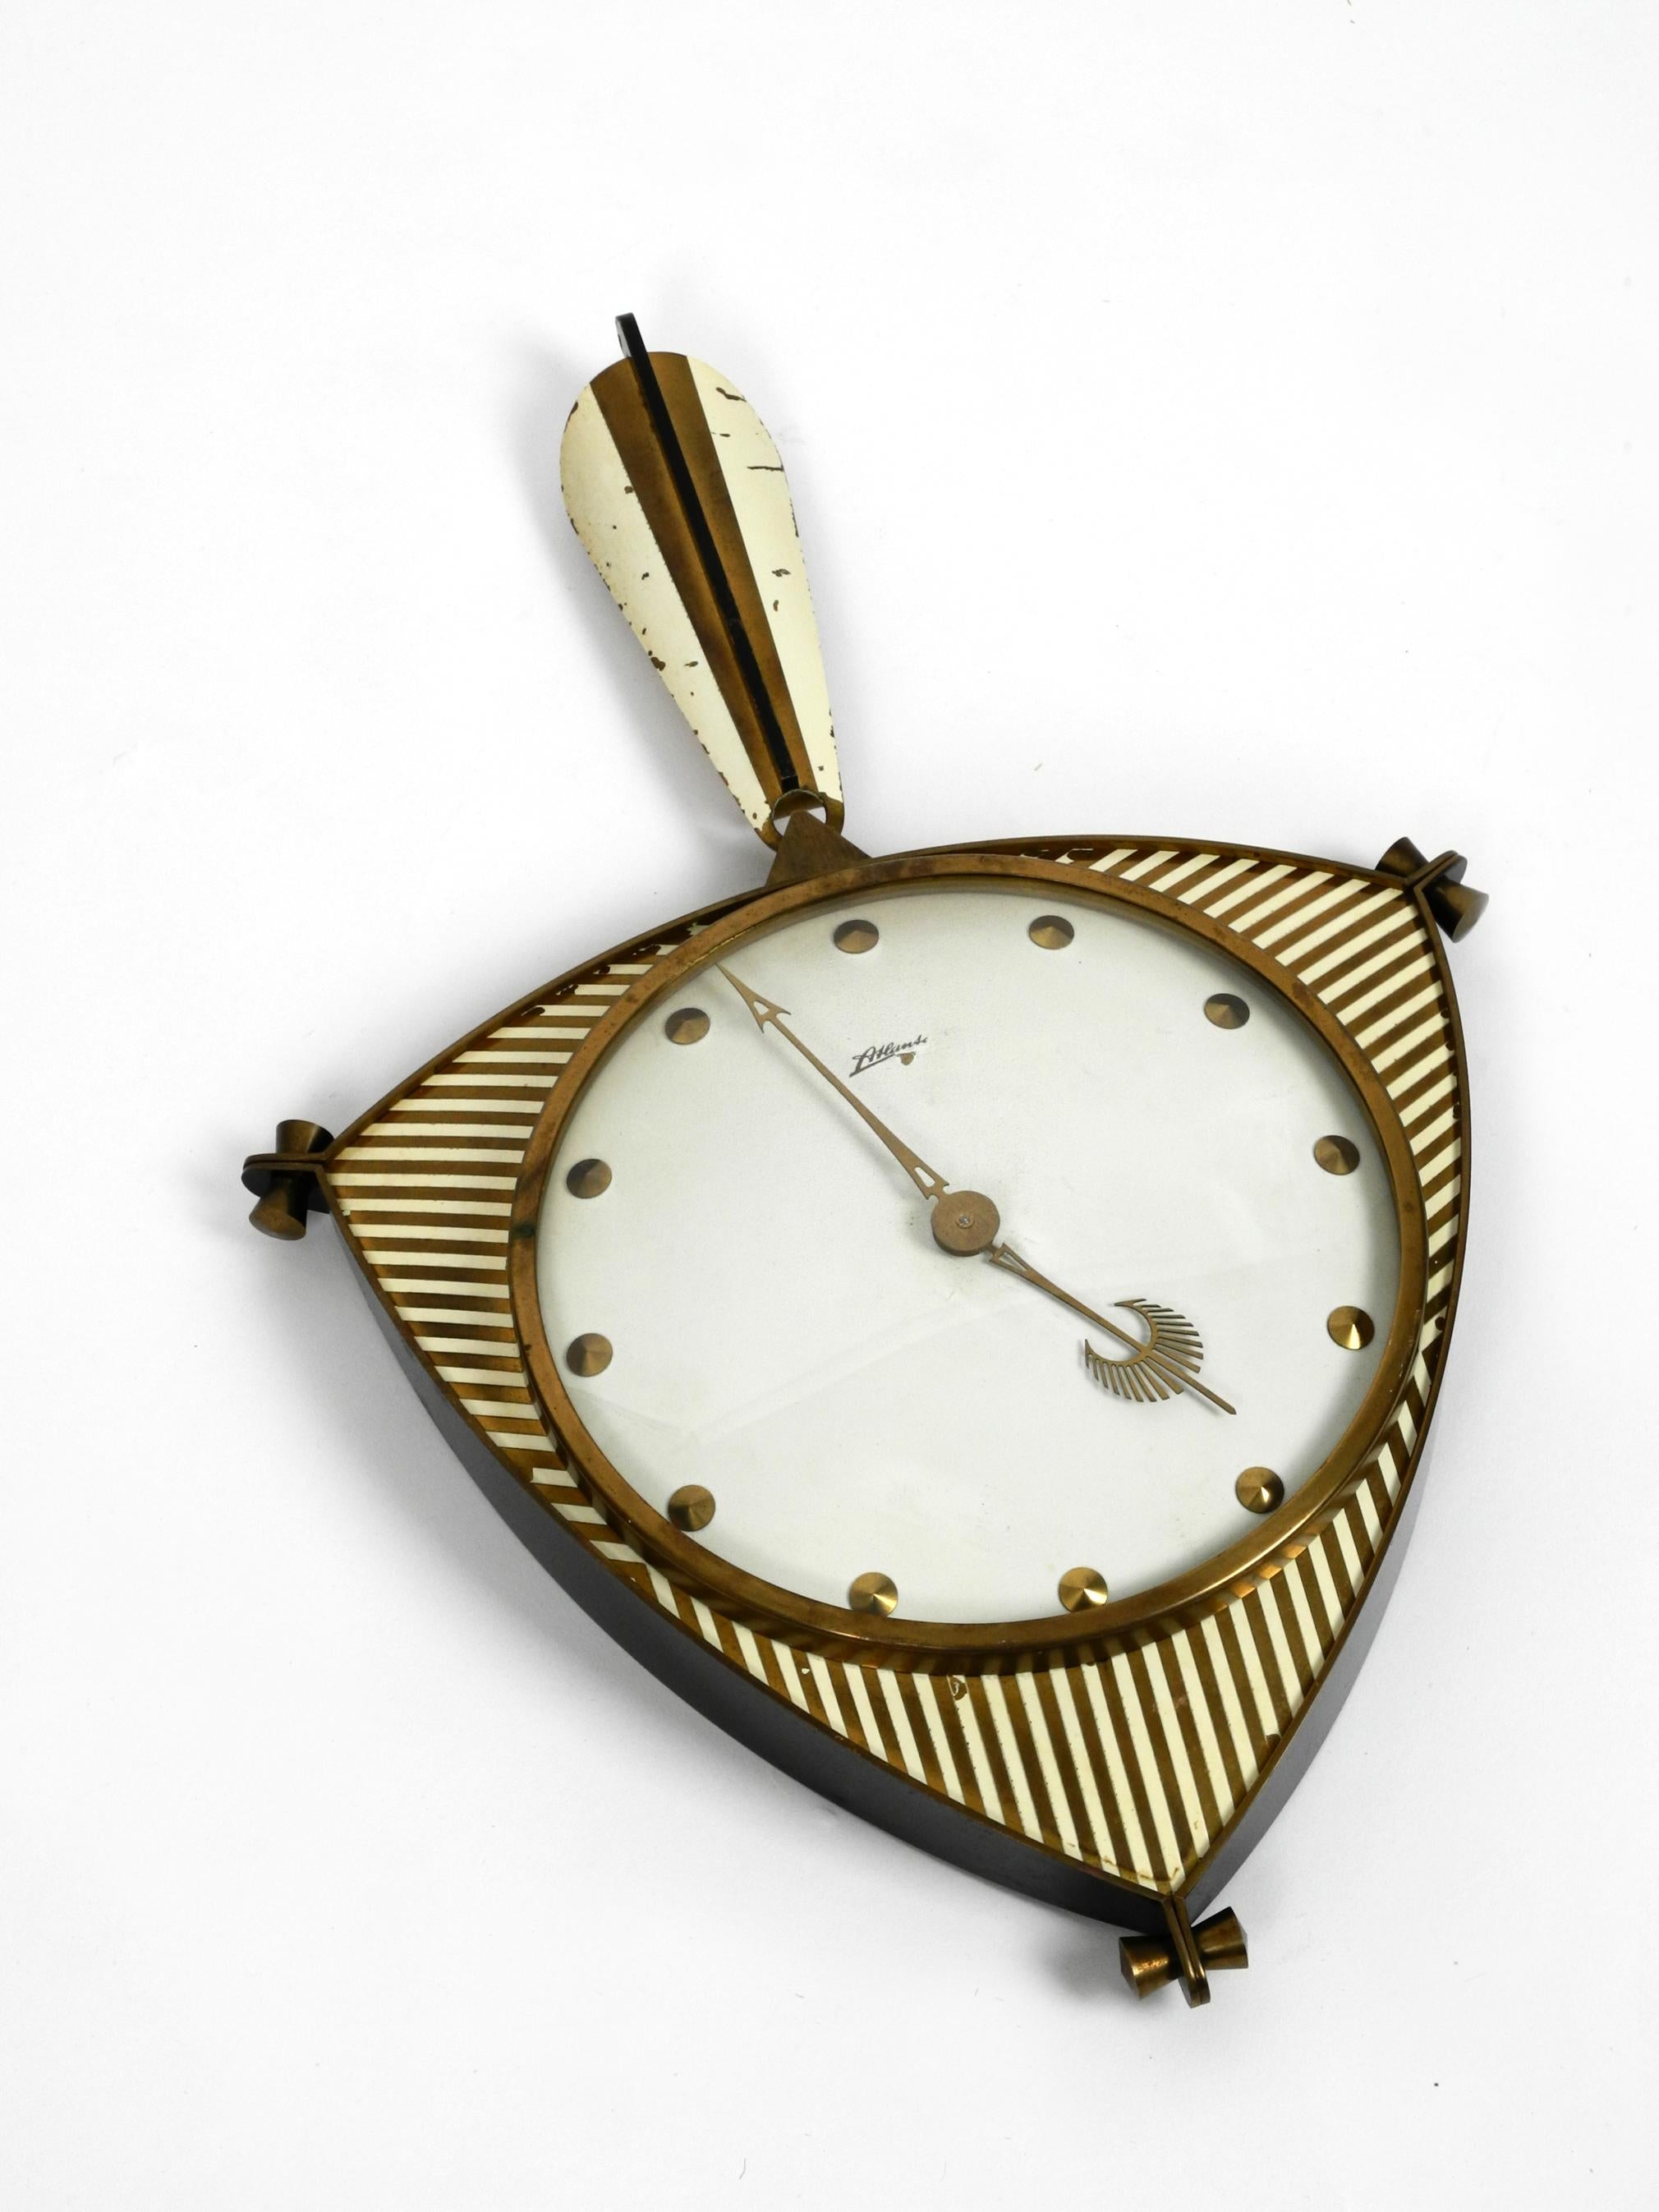 Horloge murale mécanique originale du milieu du siècle dernier à Atlanta. Avec un rythme de 10 jours d'horloge et de gong : chaque demi-heure et chaque heure pleine. Horloge entièrement fonctionnelle et précise.
Très beau design élaboré du milieu